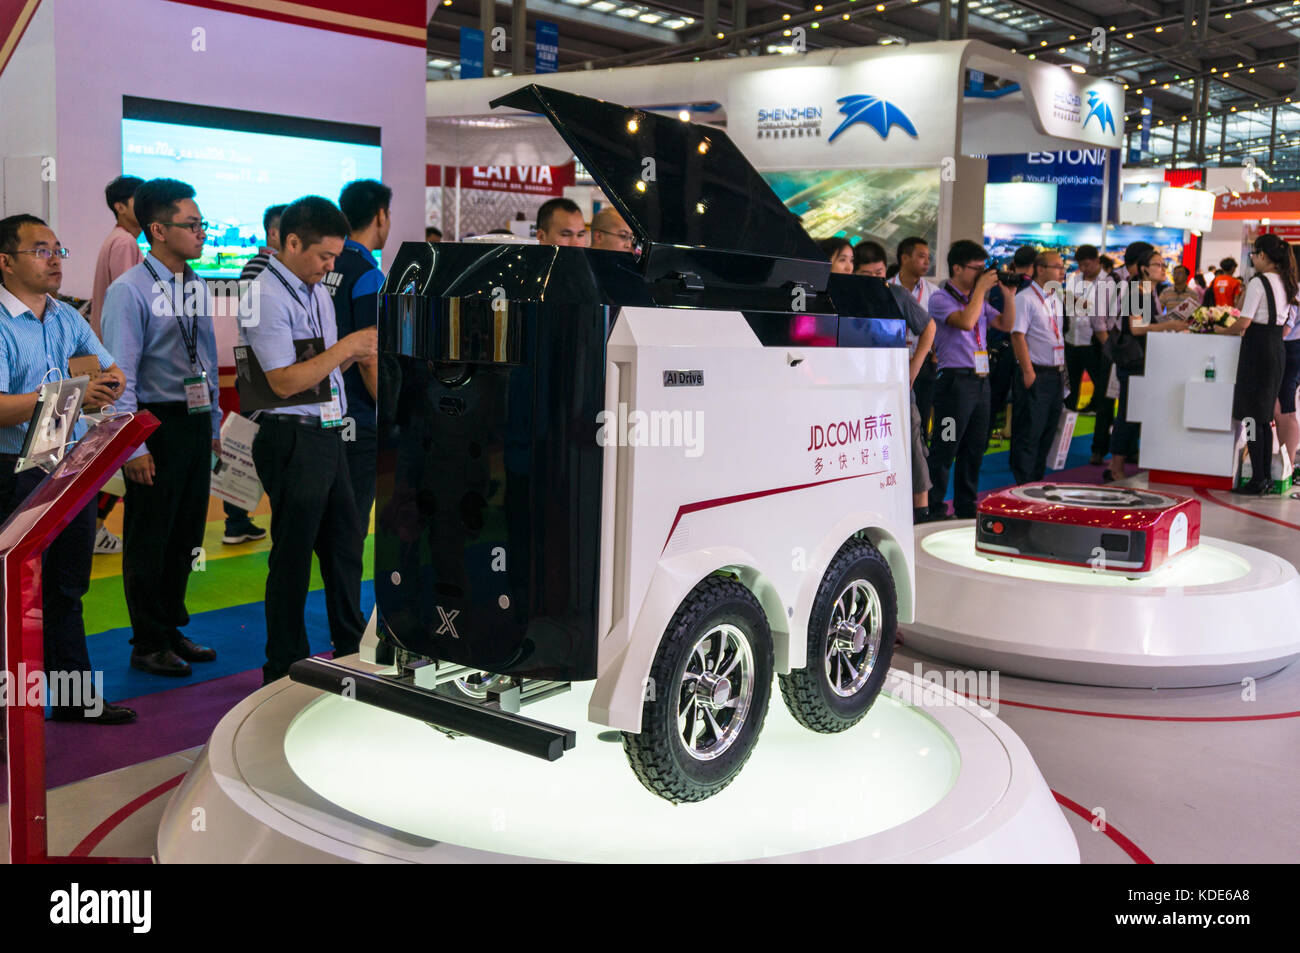 Détaillant en ligne chinois jd.com montrant des prototypes de robot et l'entrepôt de distribution de colis à robot 2017 Chine la logistique et le transport juste. Banque D'Images